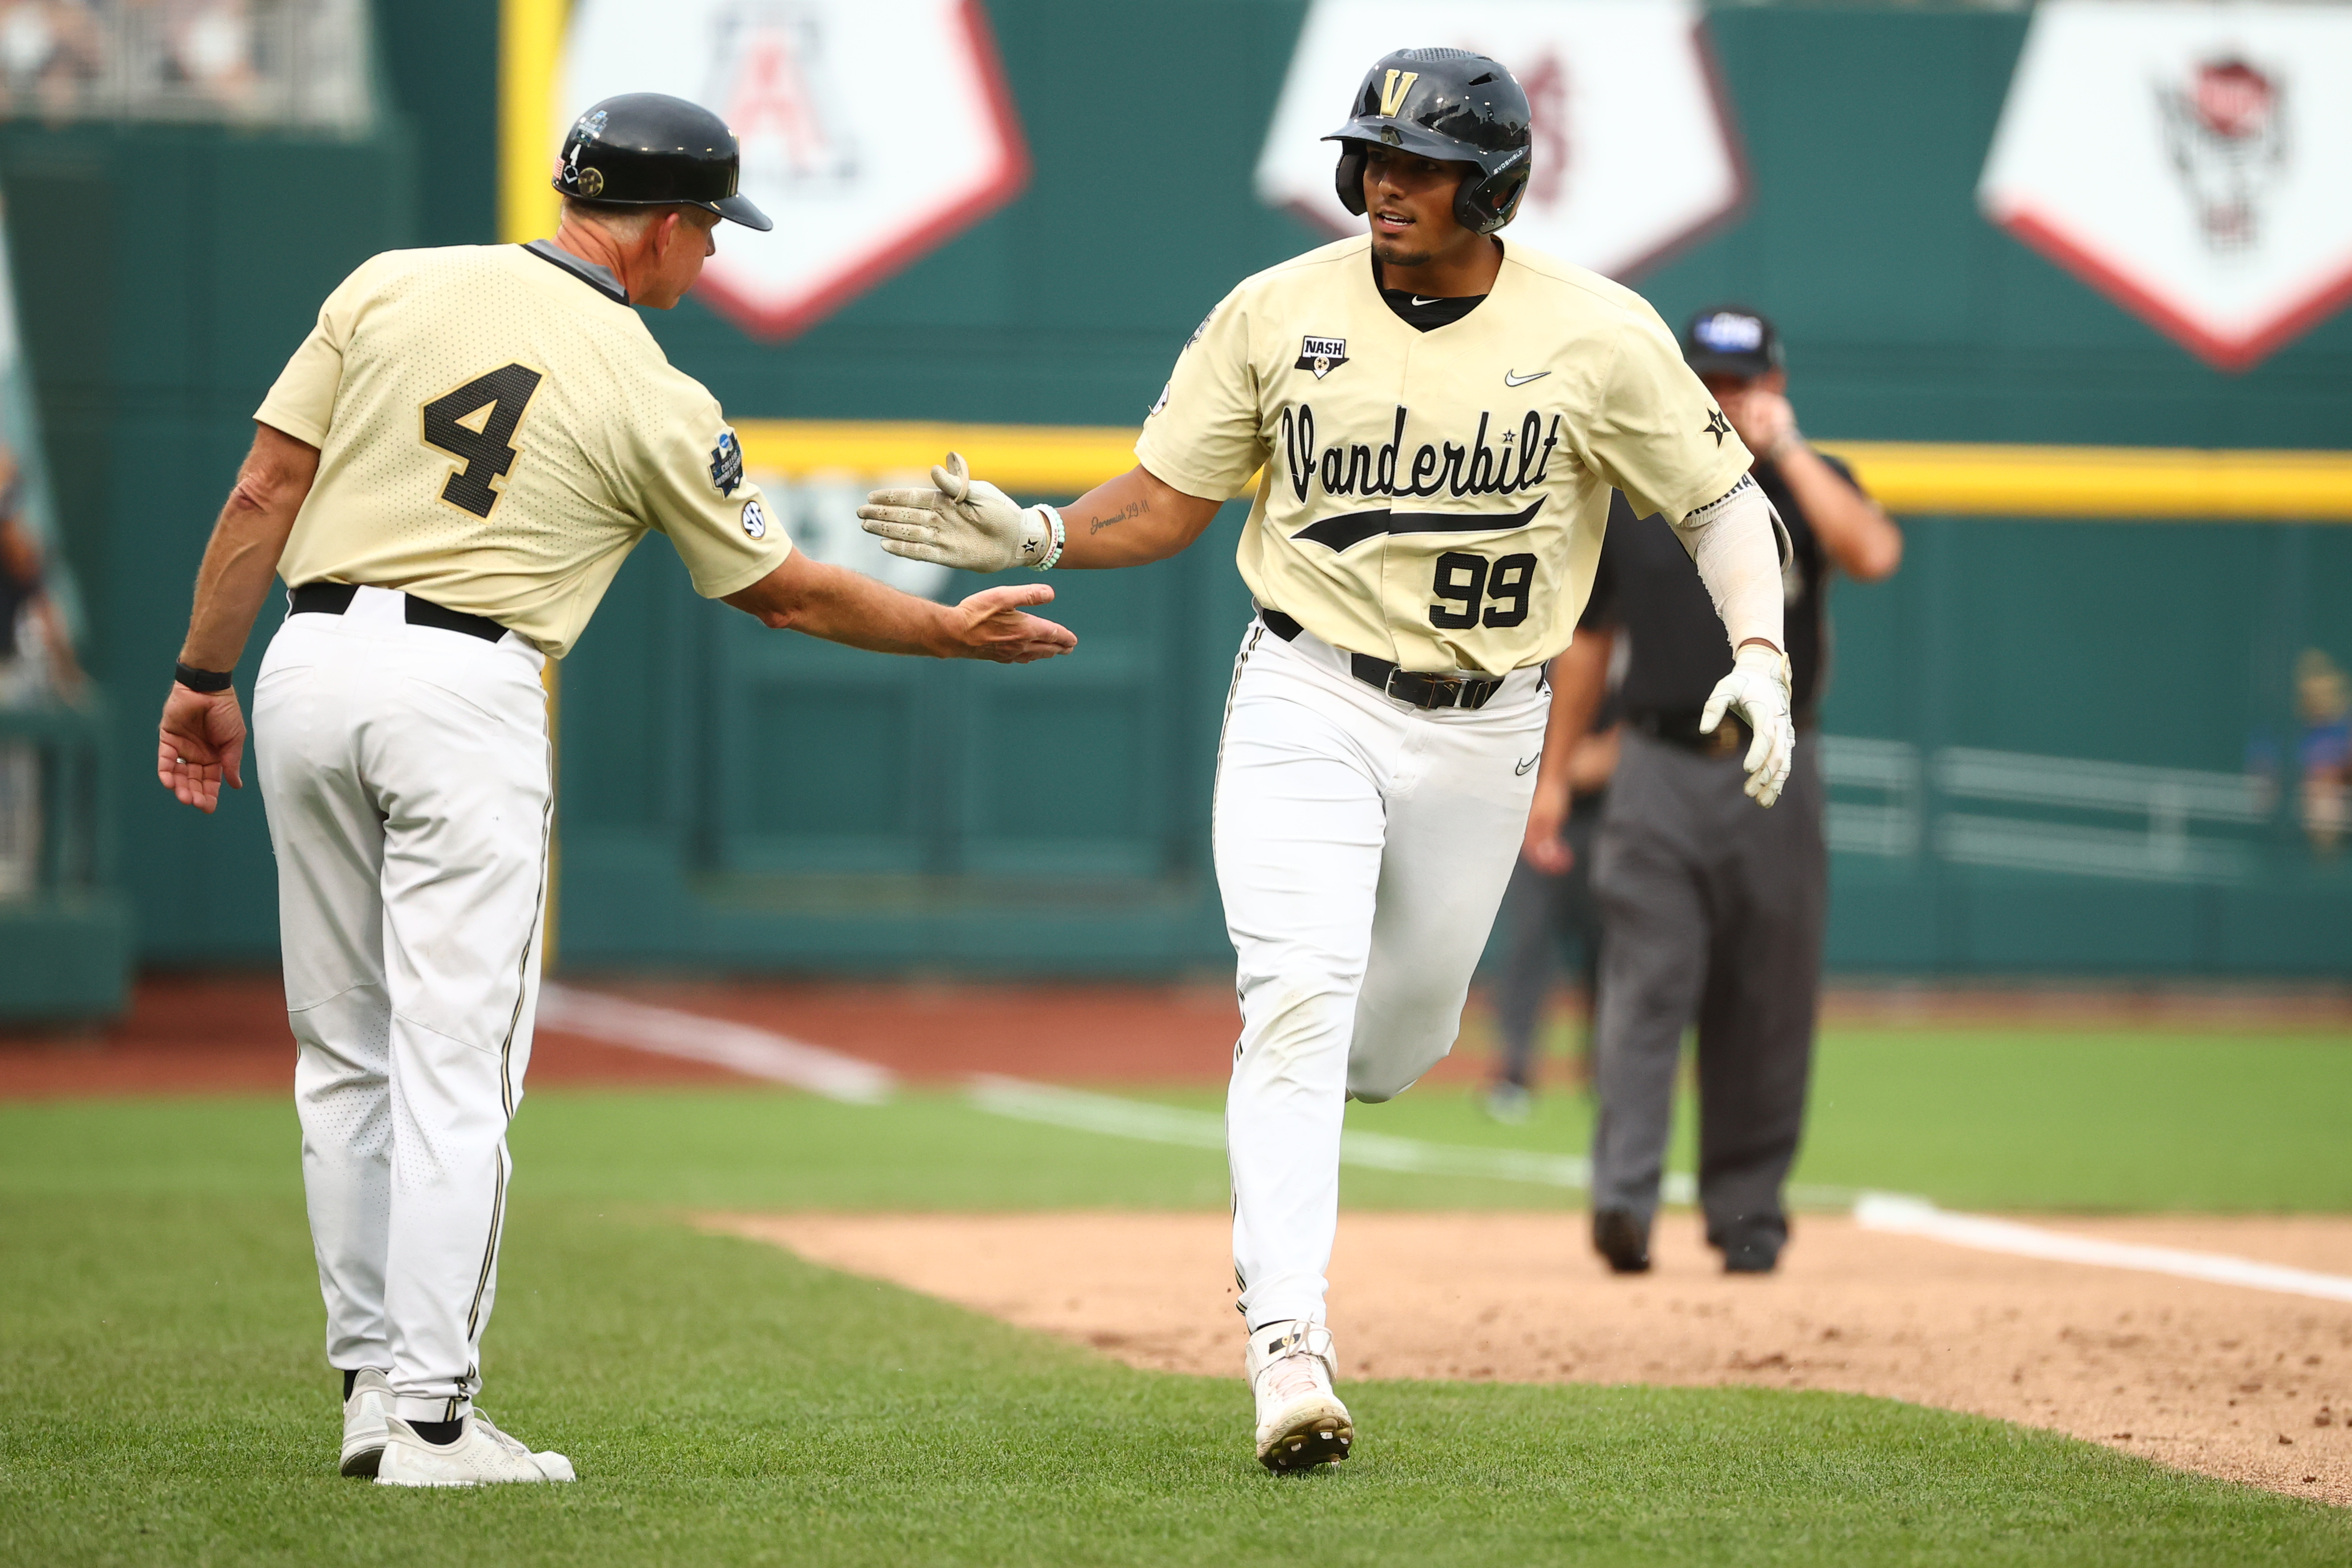 Vanderbilt's Jayson Gonzalez caps a 7-run first inning with a three-run homer